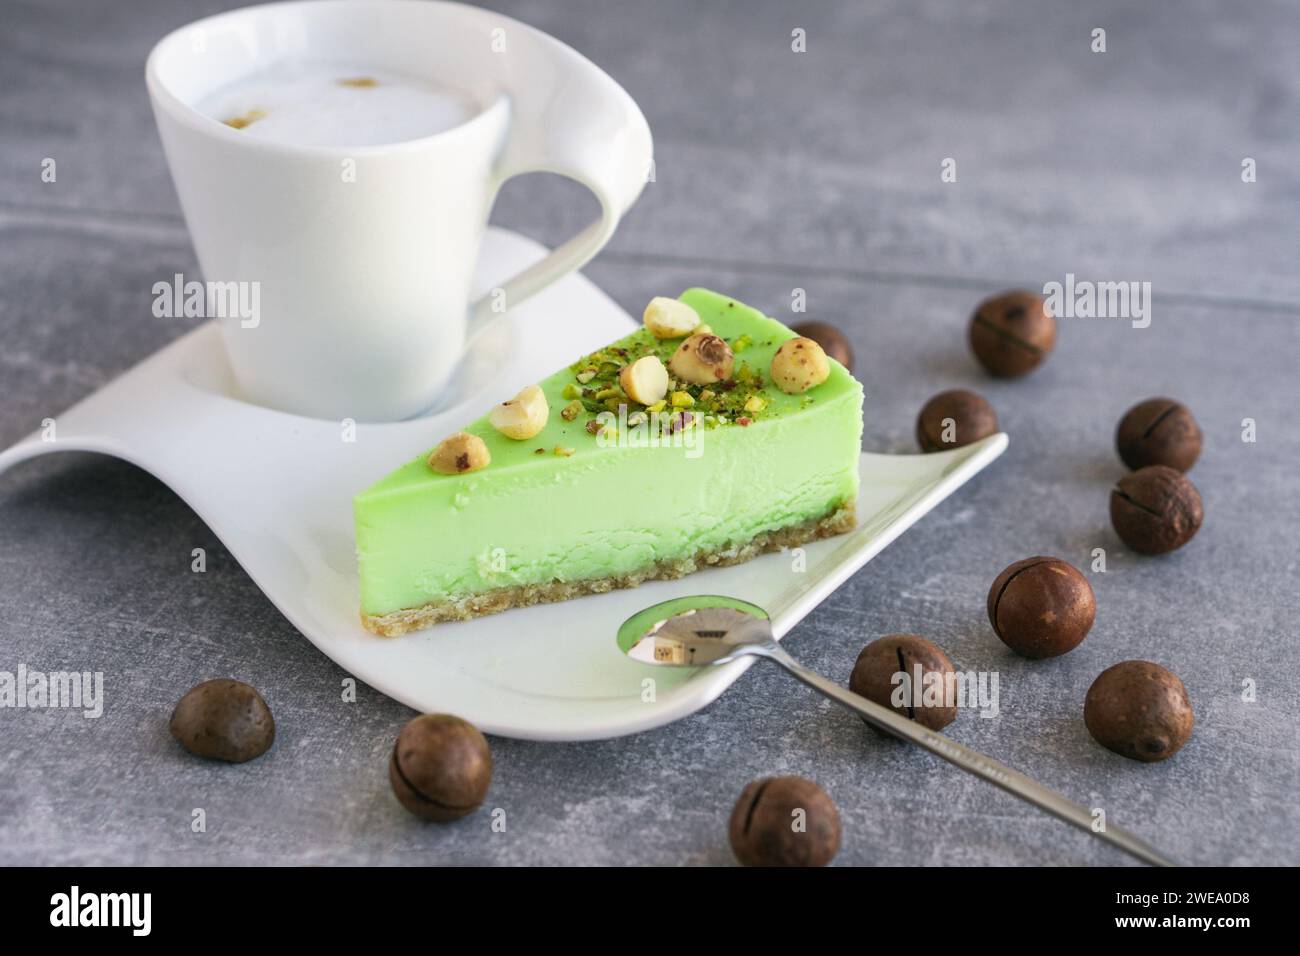 Gâteau au pistache vert avec noix de macadamia sur une assiette blanche et cappuccino. Cheesecake crémeux à la pistache Banque D'Images